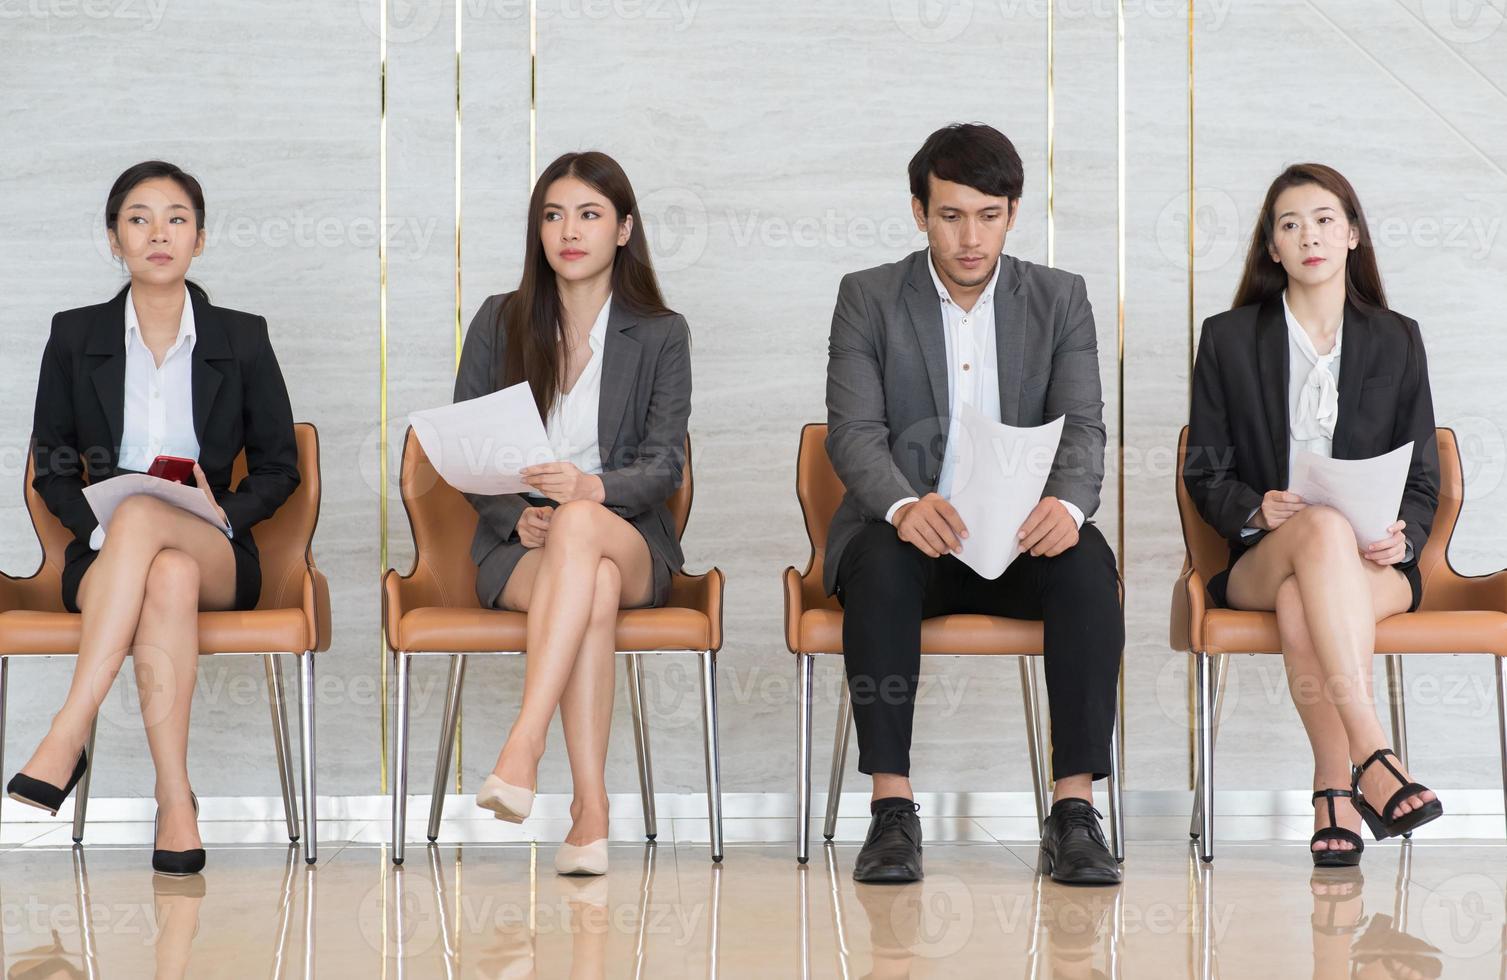 Aziatische zakenmensen zijn gestrest over het wachten op een sollicitatiegesprek. foto